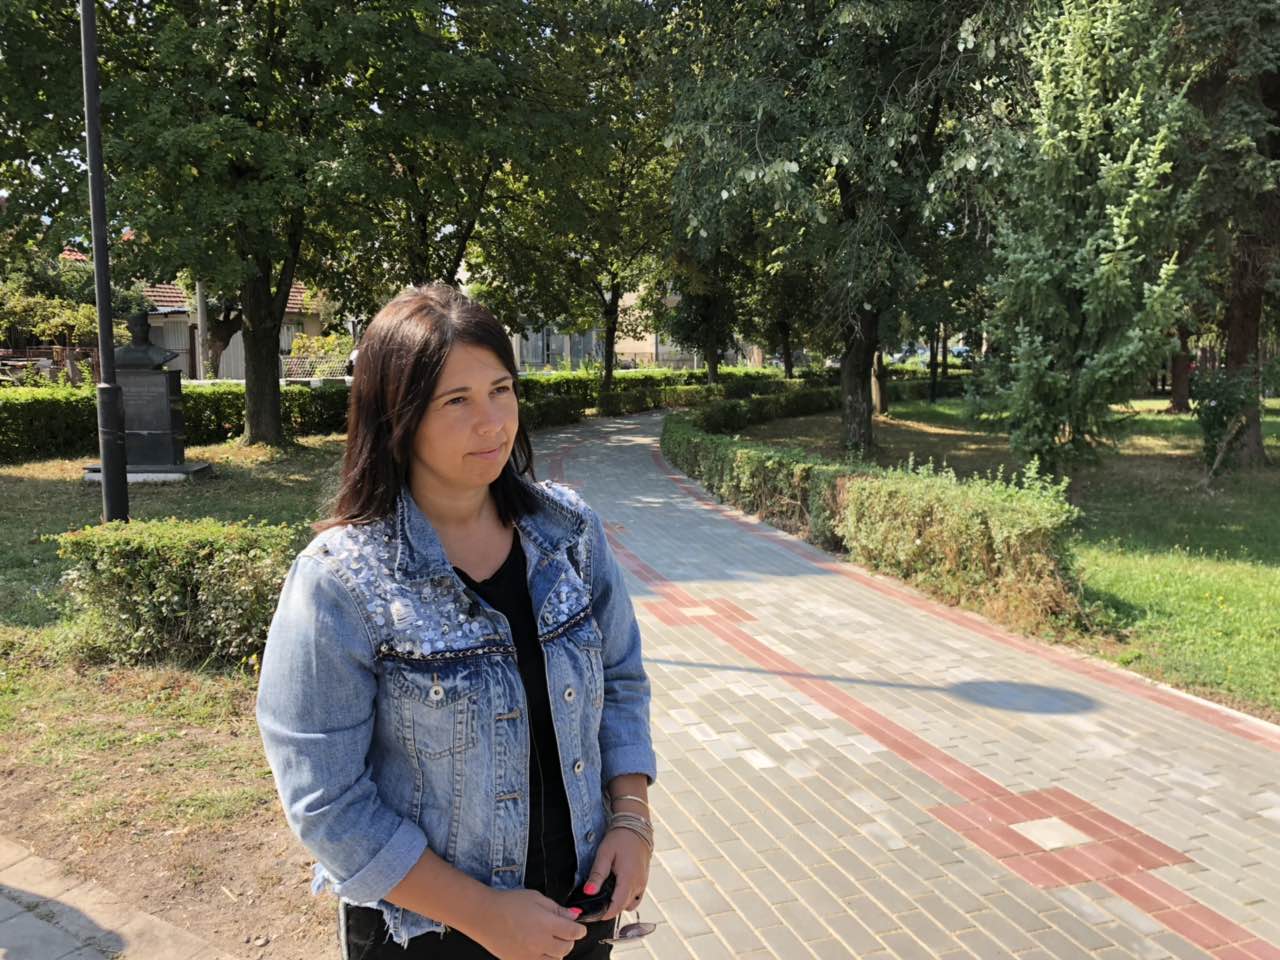 Predsednica opštine Svrljig Jelena Trifunović obišla gradski park, foto: M.M.